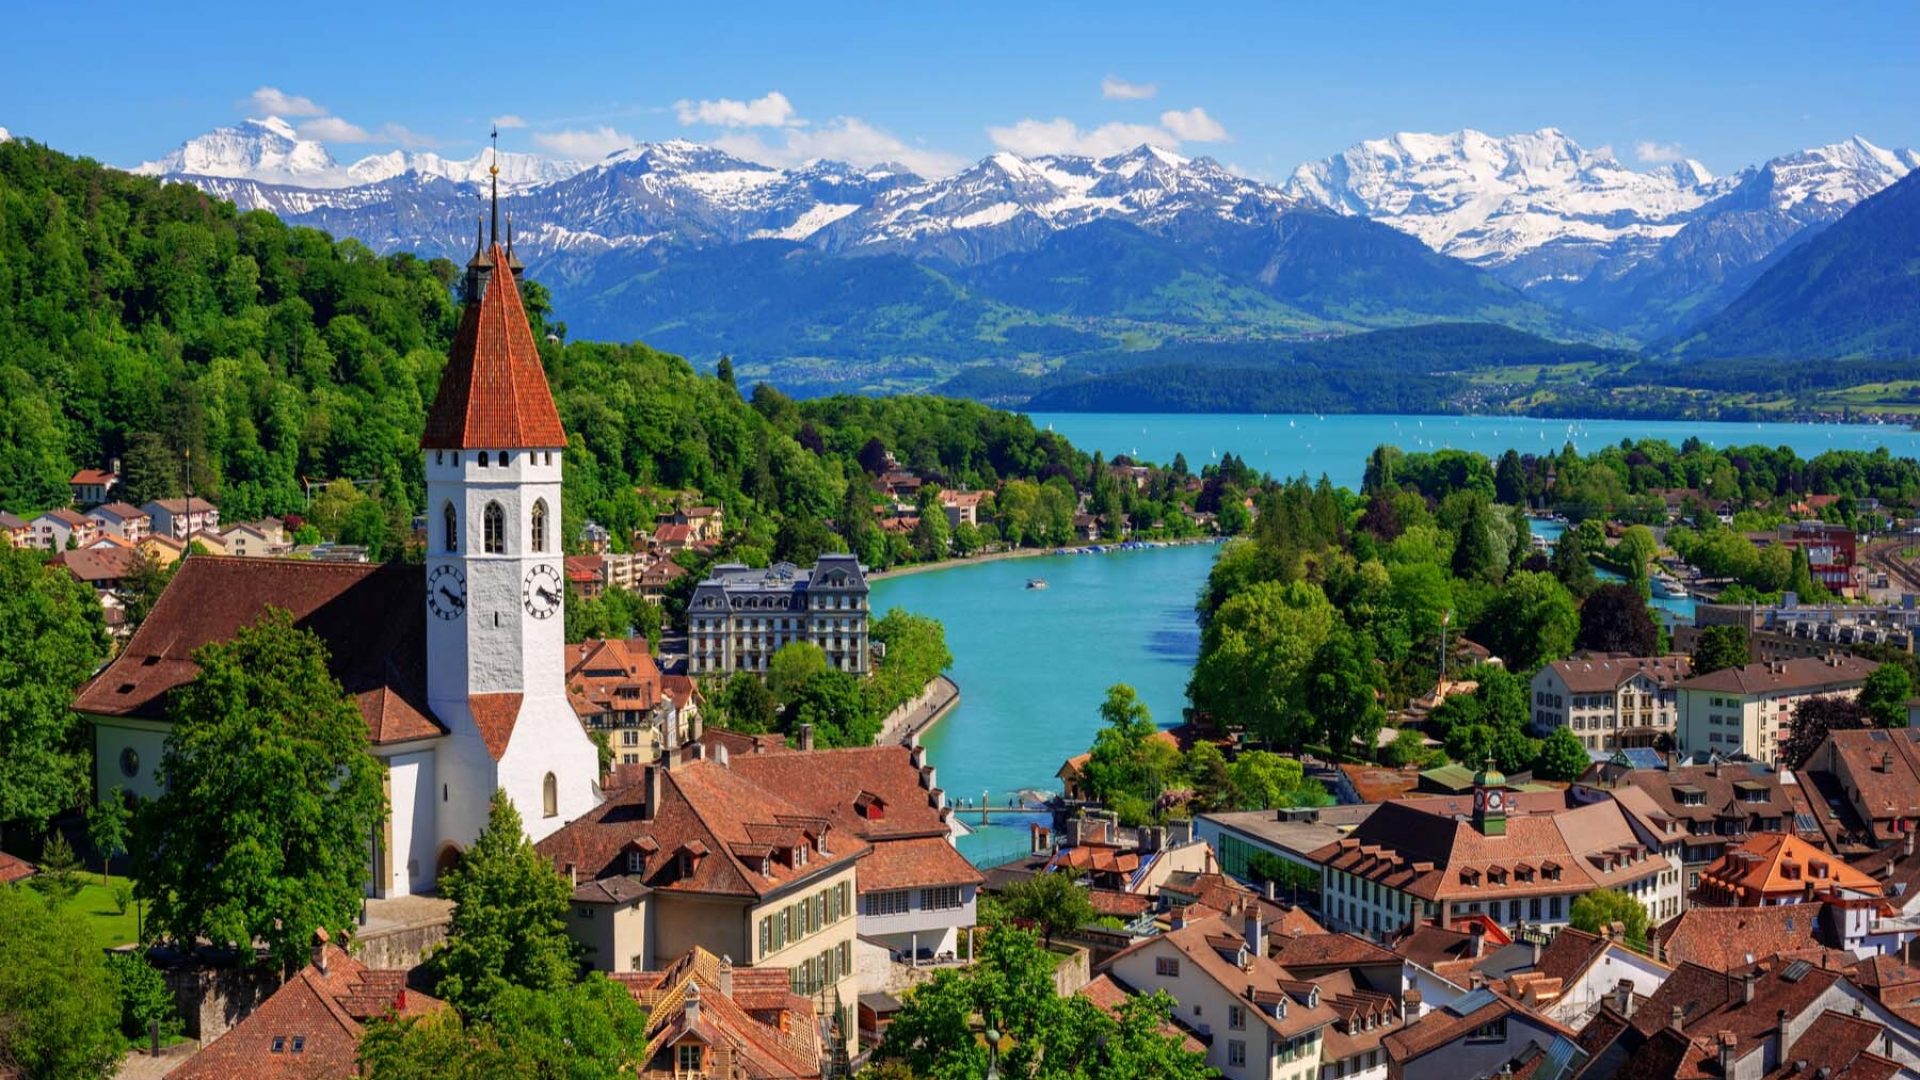 8 Best Universities in Switzerland for International Students Beta